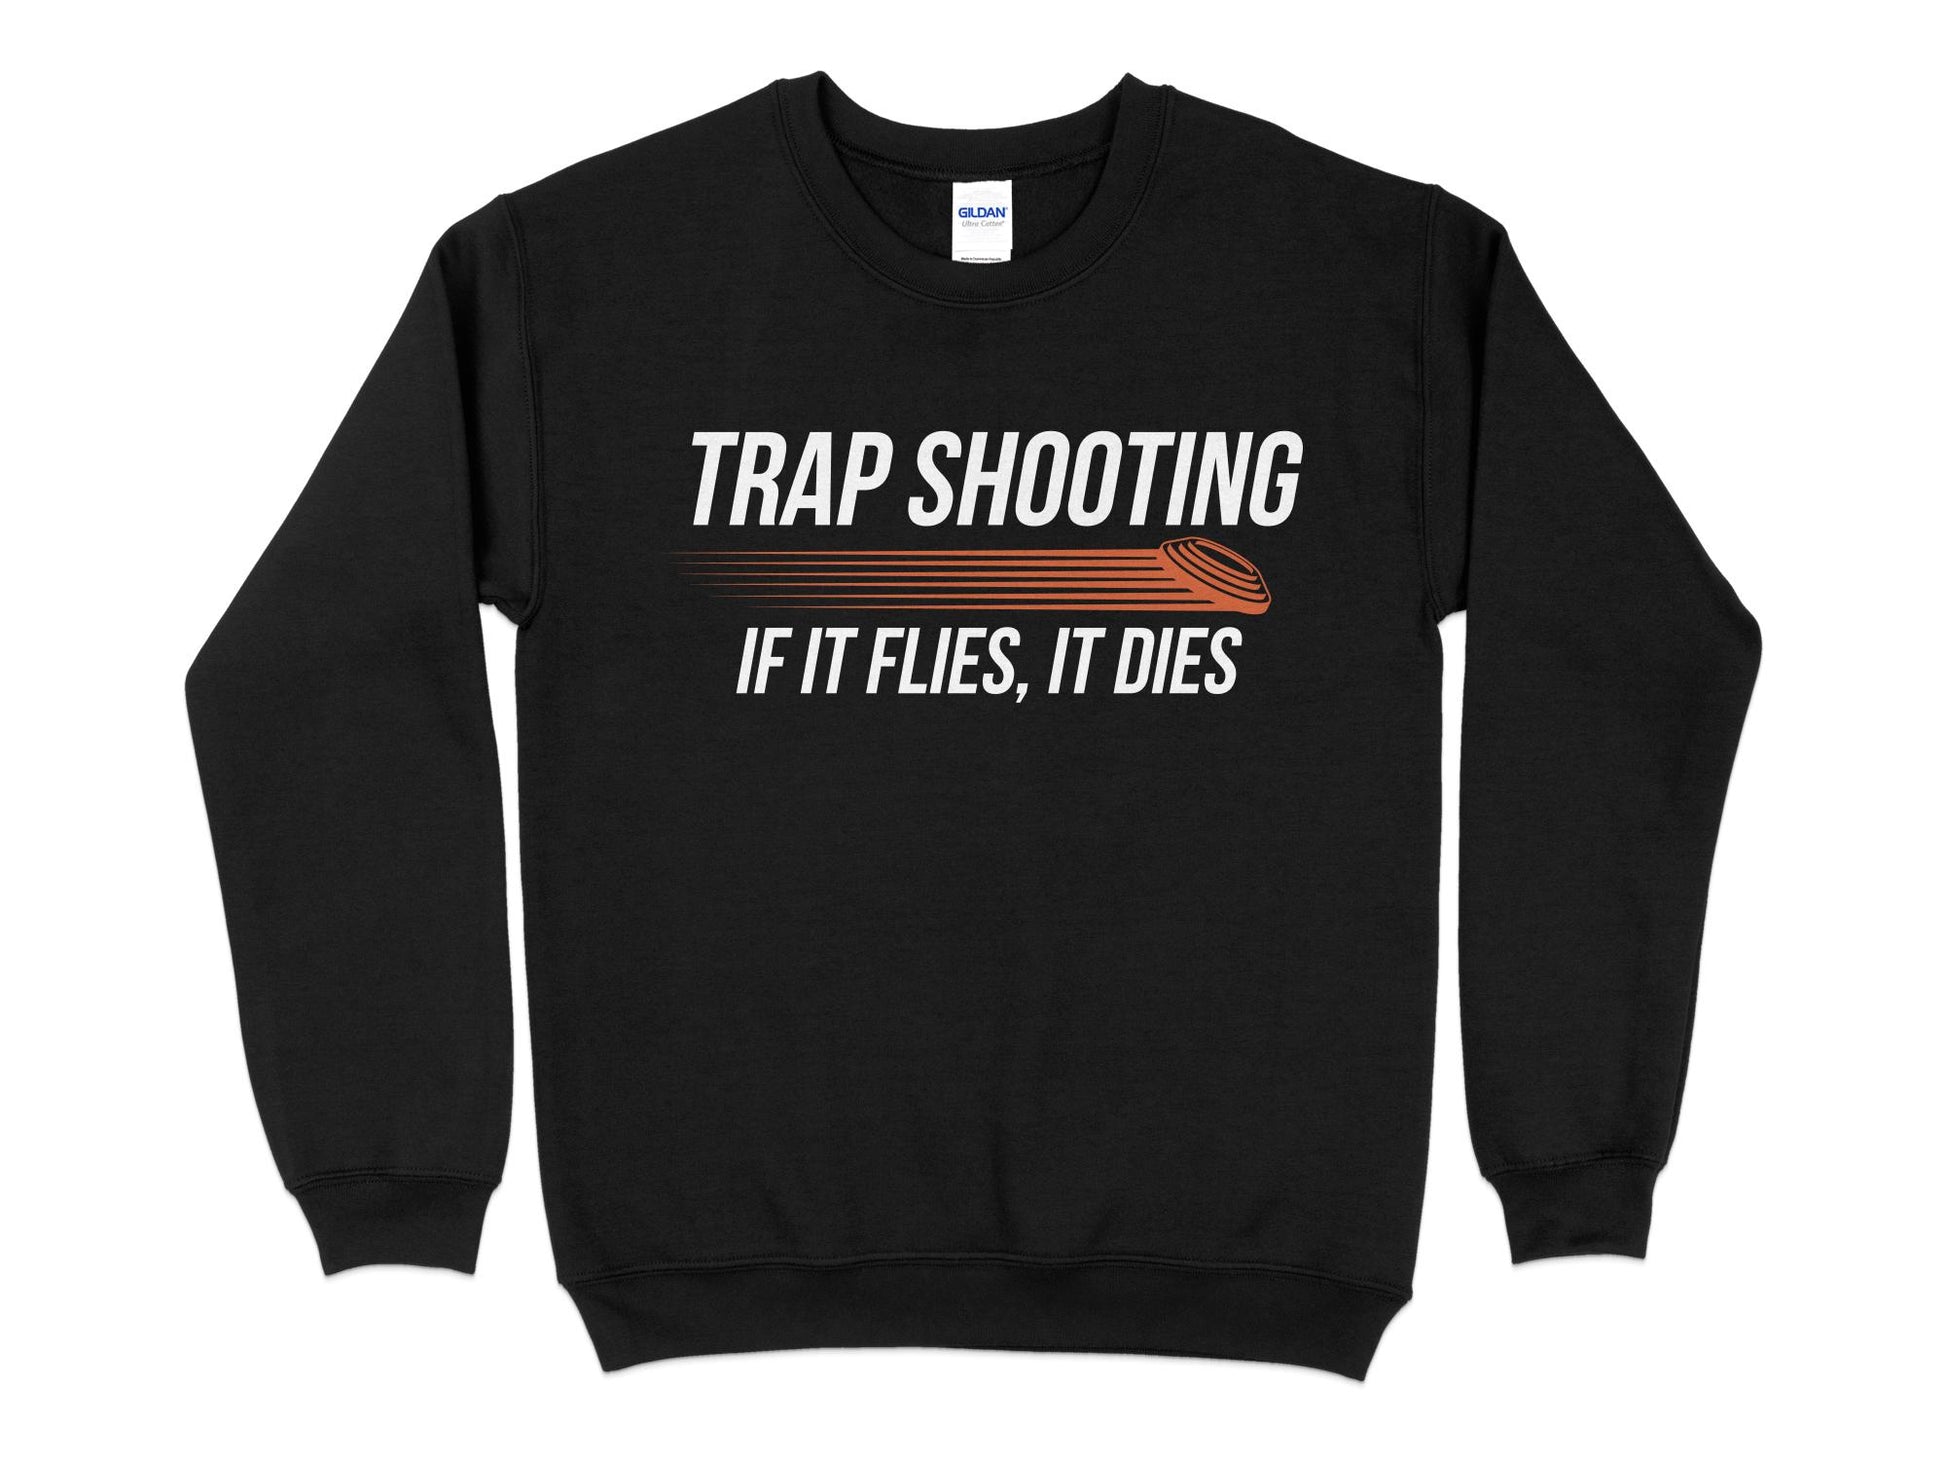 Trap Shooting Sweatshirt, If It Flies It Dies, black